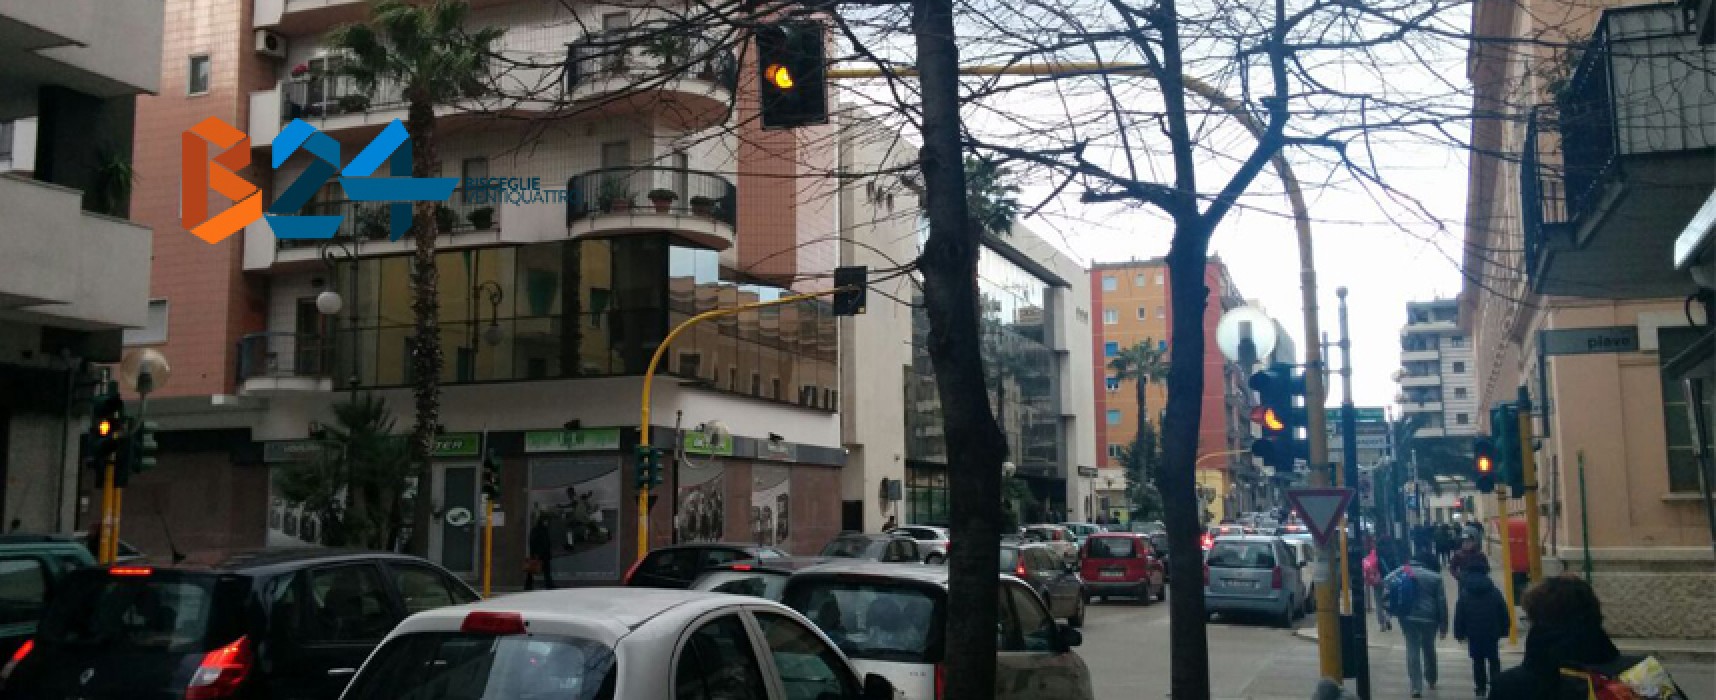 Semafori dell’incrocio via Piave – via Vittorio Veneto spenti da 5 giorni, terza volta dall’inizio 2015